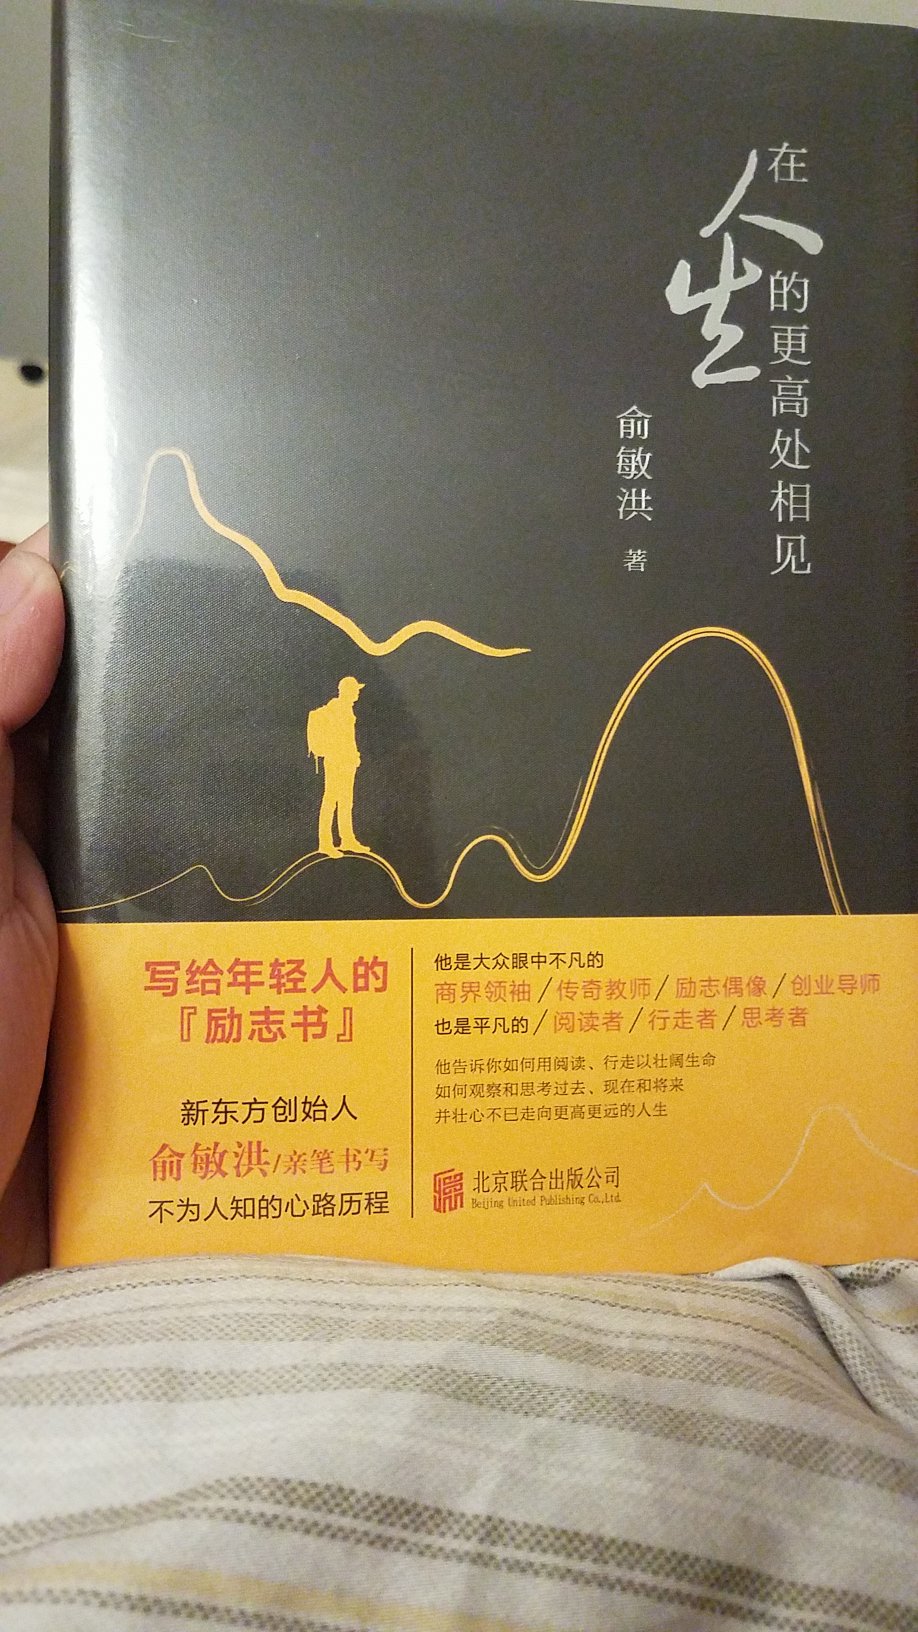 俞敏洪的书，了解他创业的心路历程很好，有人生启发。